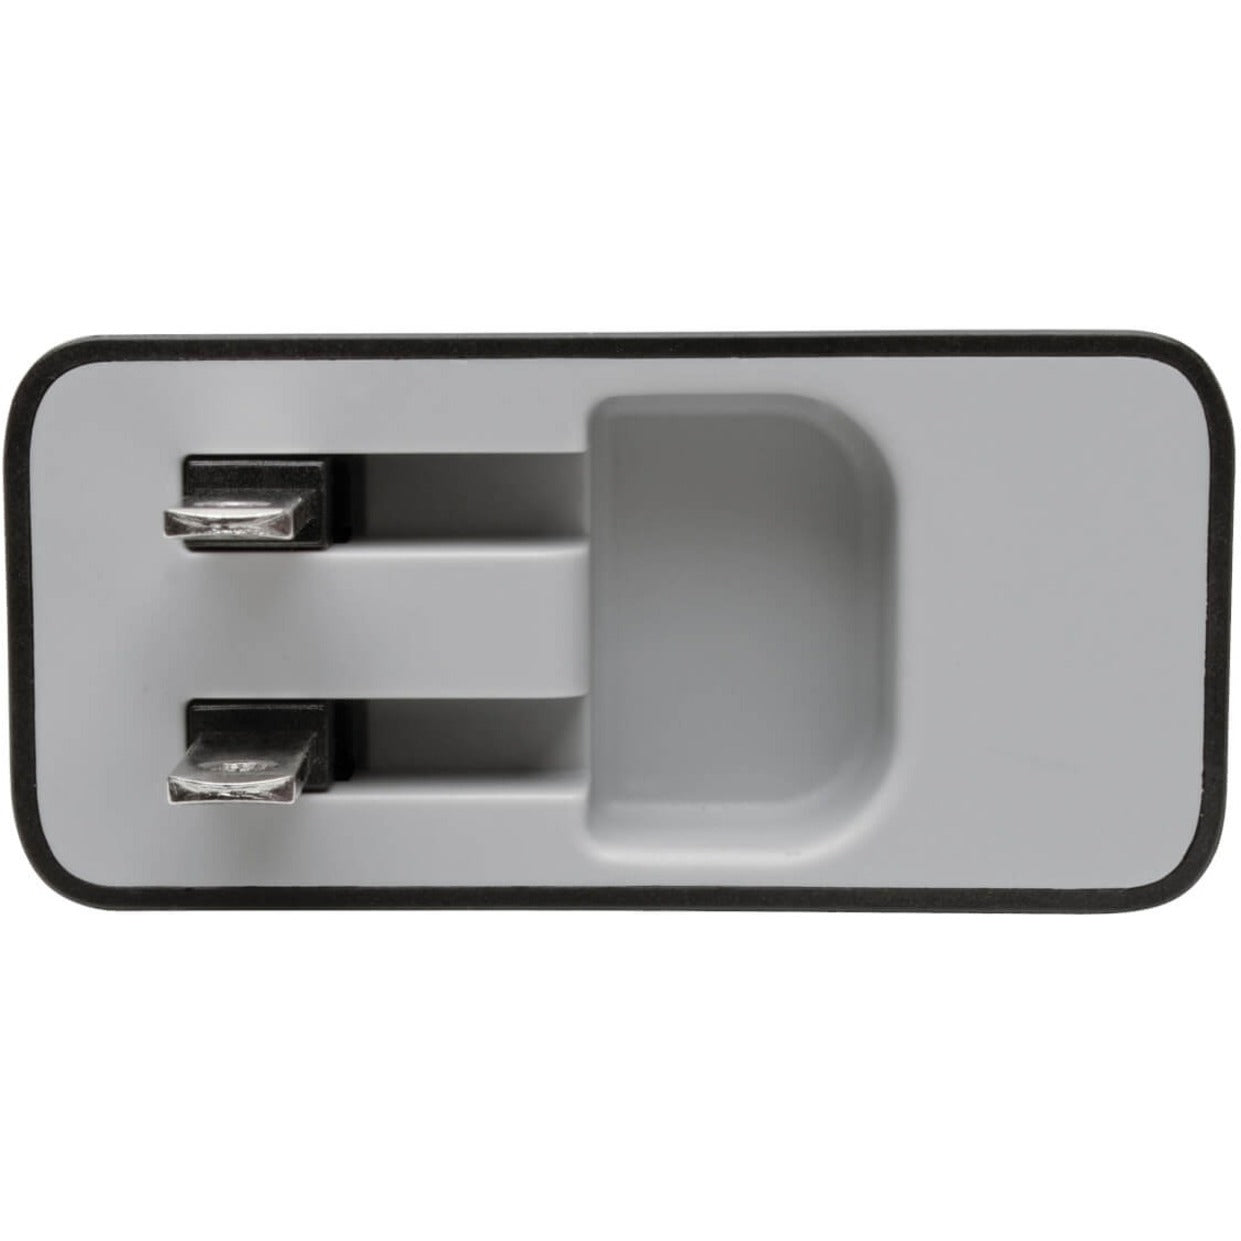 Tripp Lite U280-W02-A1C1 AC Adaptateur 2PT USB Mur Chargeur avec USB Type C 51W Puissance 2 Garantie Year